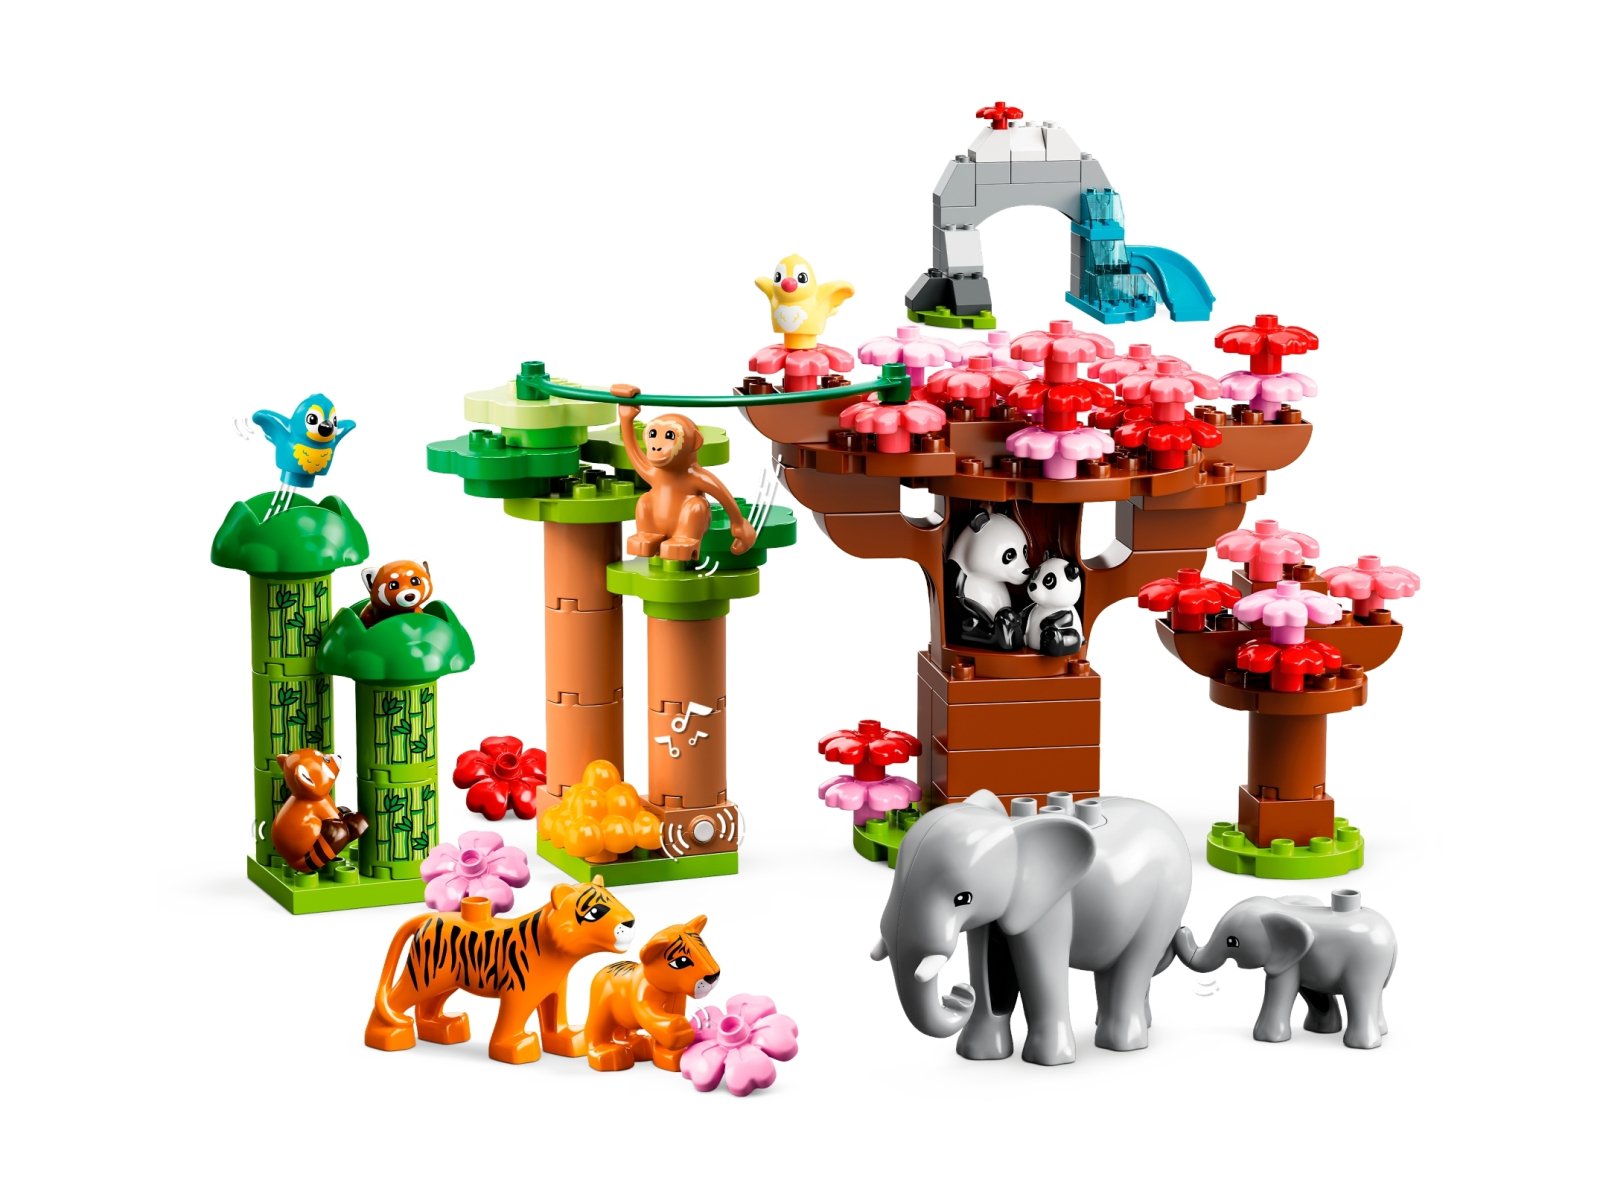 LEGO 10974 Duplo Dzikie zwierzęta Azji